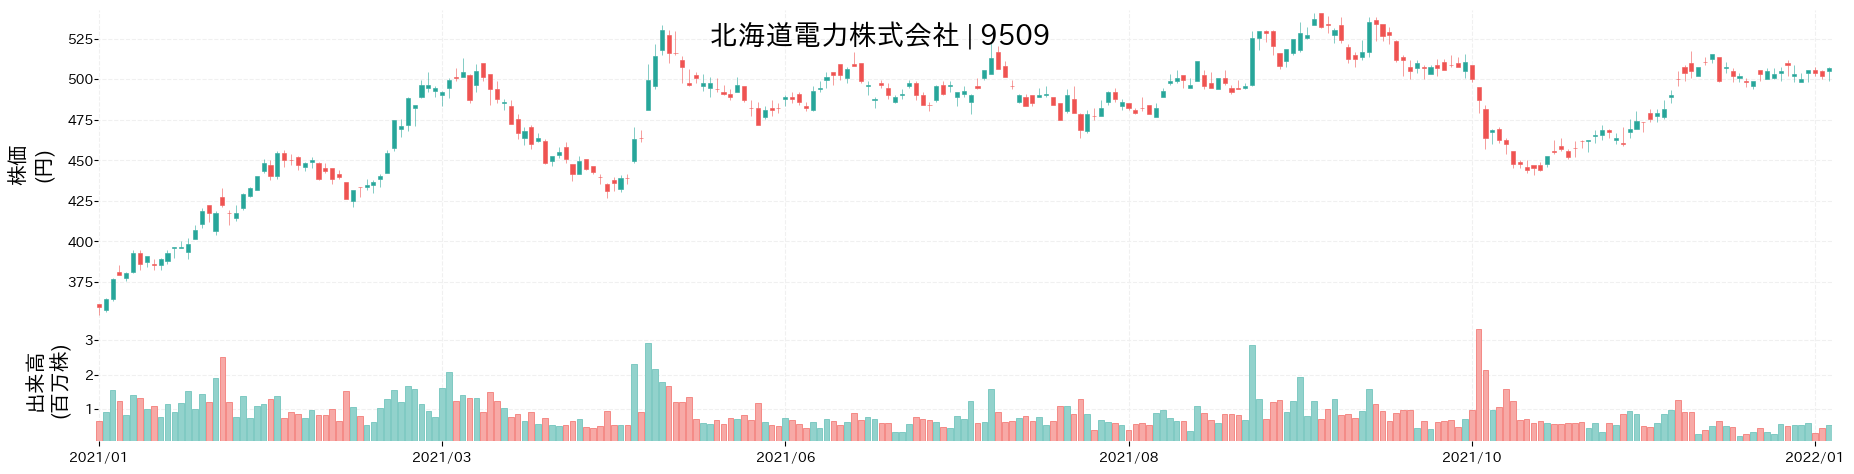 北海道電力の株価推移(2021)